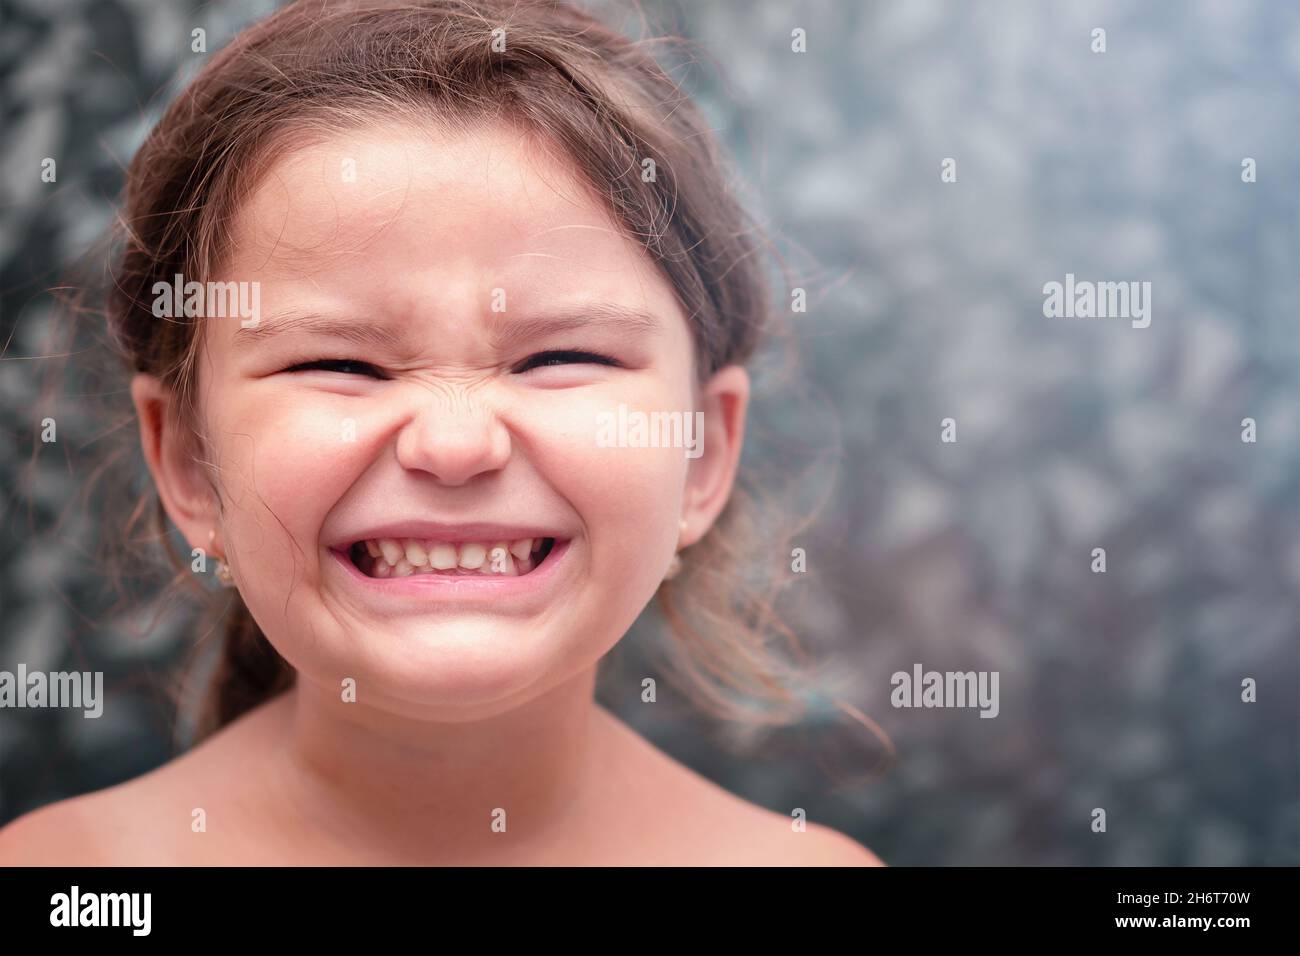 Kind lächelt und zeigt Zähne. Mädchen putzt sich die Zähne im Badezimmer Stockfoto